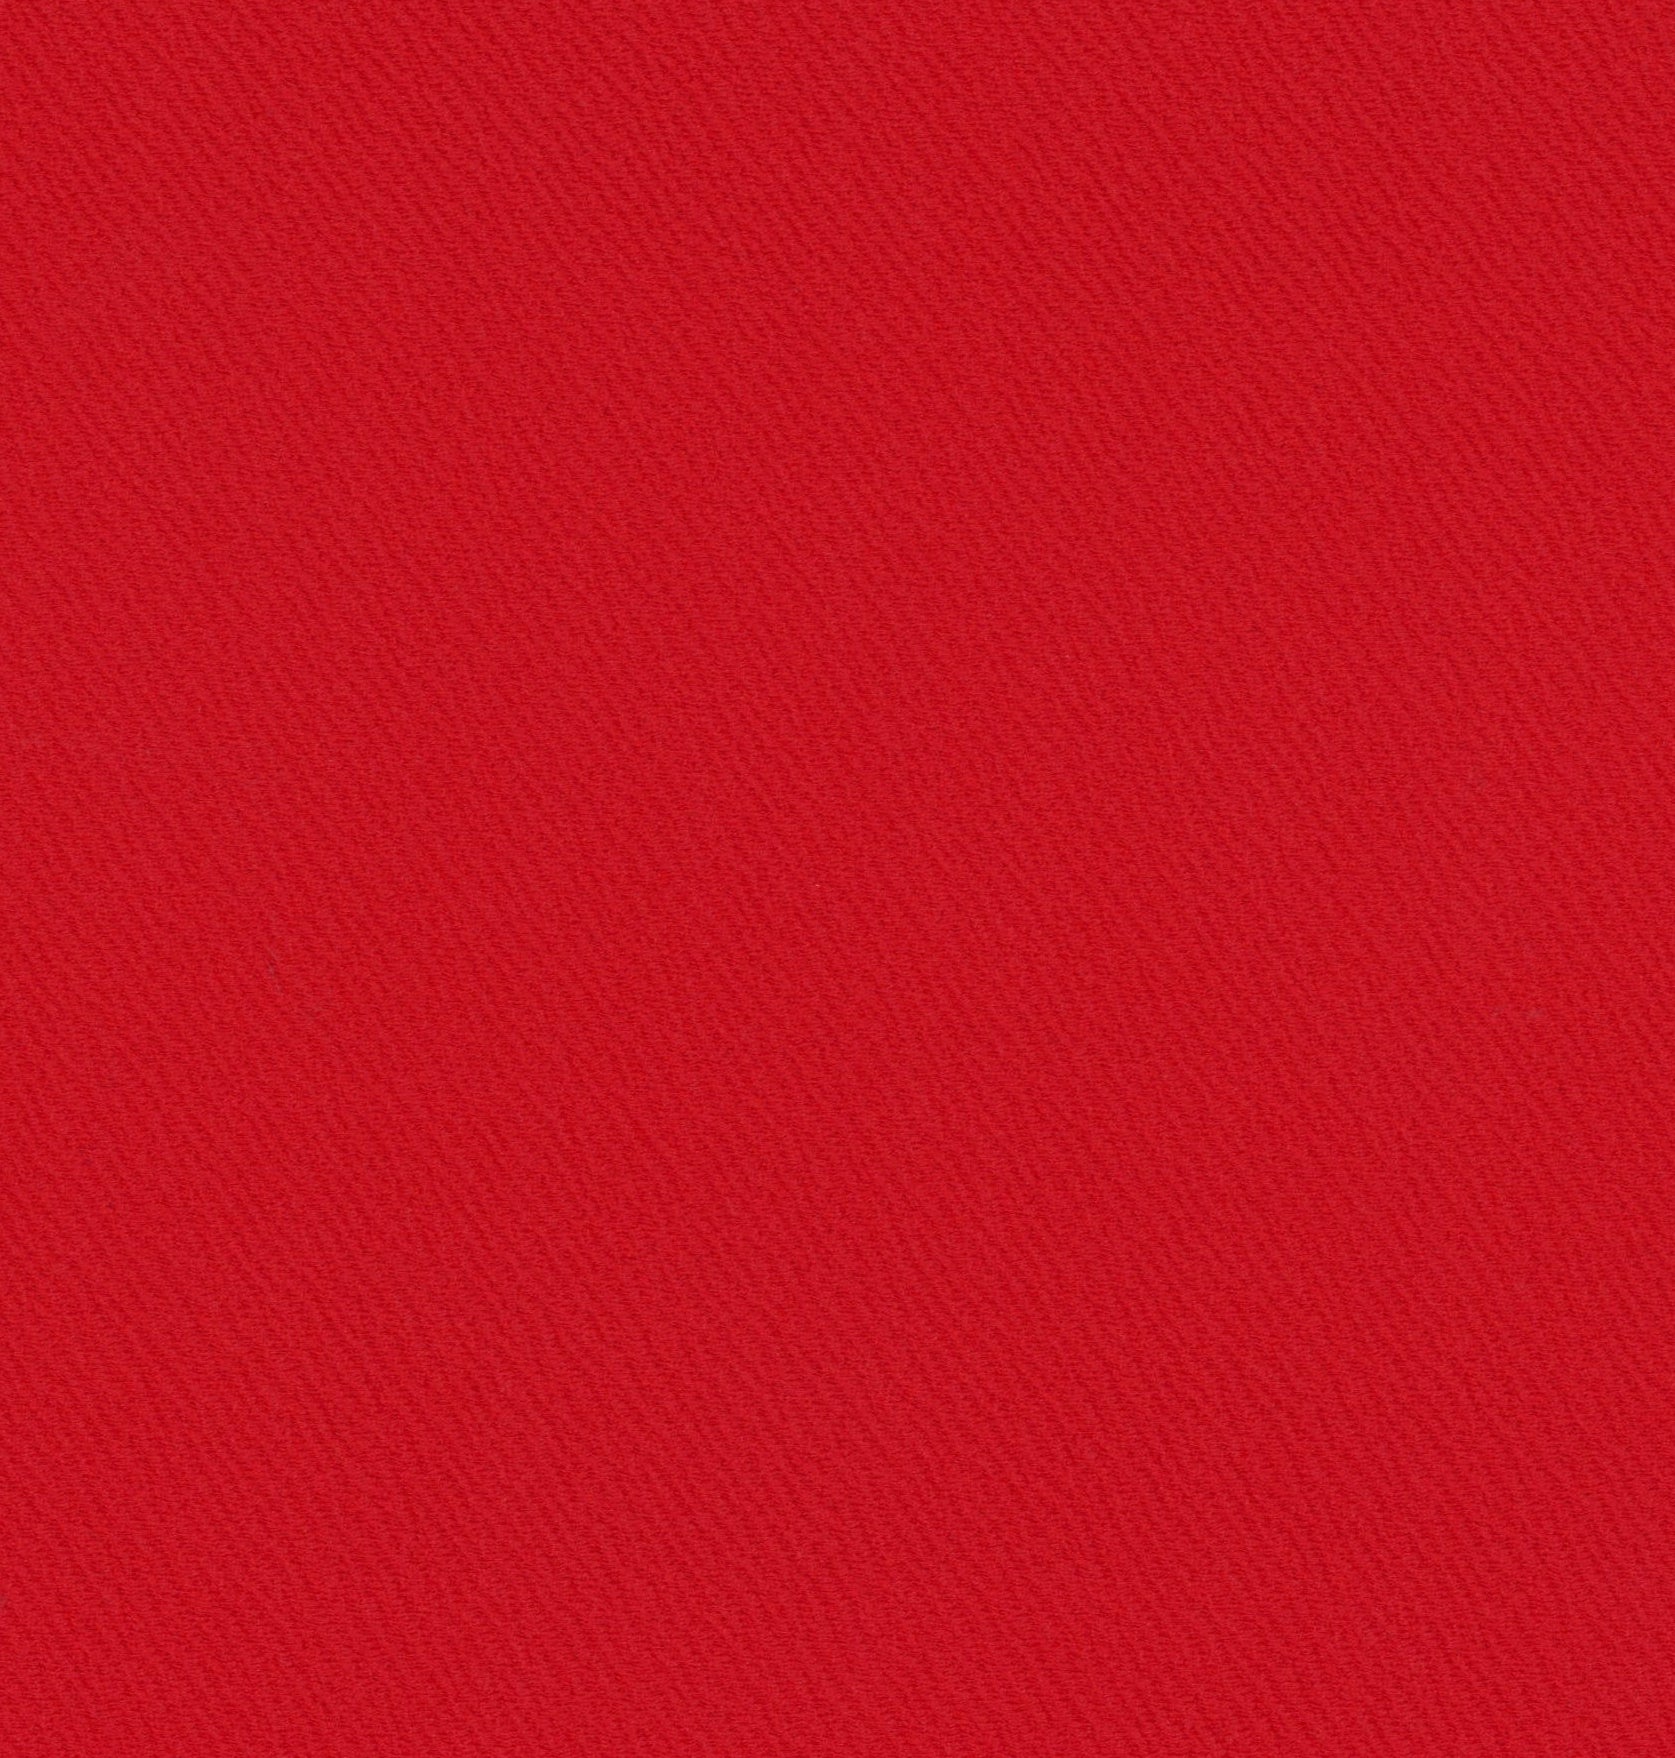 13018-05 Red Riverpool Jacquard Plain Dyed Blend 260g/yd 58&quot; blend jacquard knit plain dyed polyester red spandex Solid Color, Jacquard - knit fabric - woven fabric - fabric company - fabric wholesale - fabric b2b - fabric factory - high quality fabric - hong kong fabric - fabric hk - acetate fabric - cotton fabric - linen fabric - metallic fabric - nylon fabric - polyester fabric - spandex fabric - chun wing hing - cwh hk - fabric worldwide ship - 針織布 - 梳織布 - 布料公司- 布料批發 - 香港布料 - 秦榮興